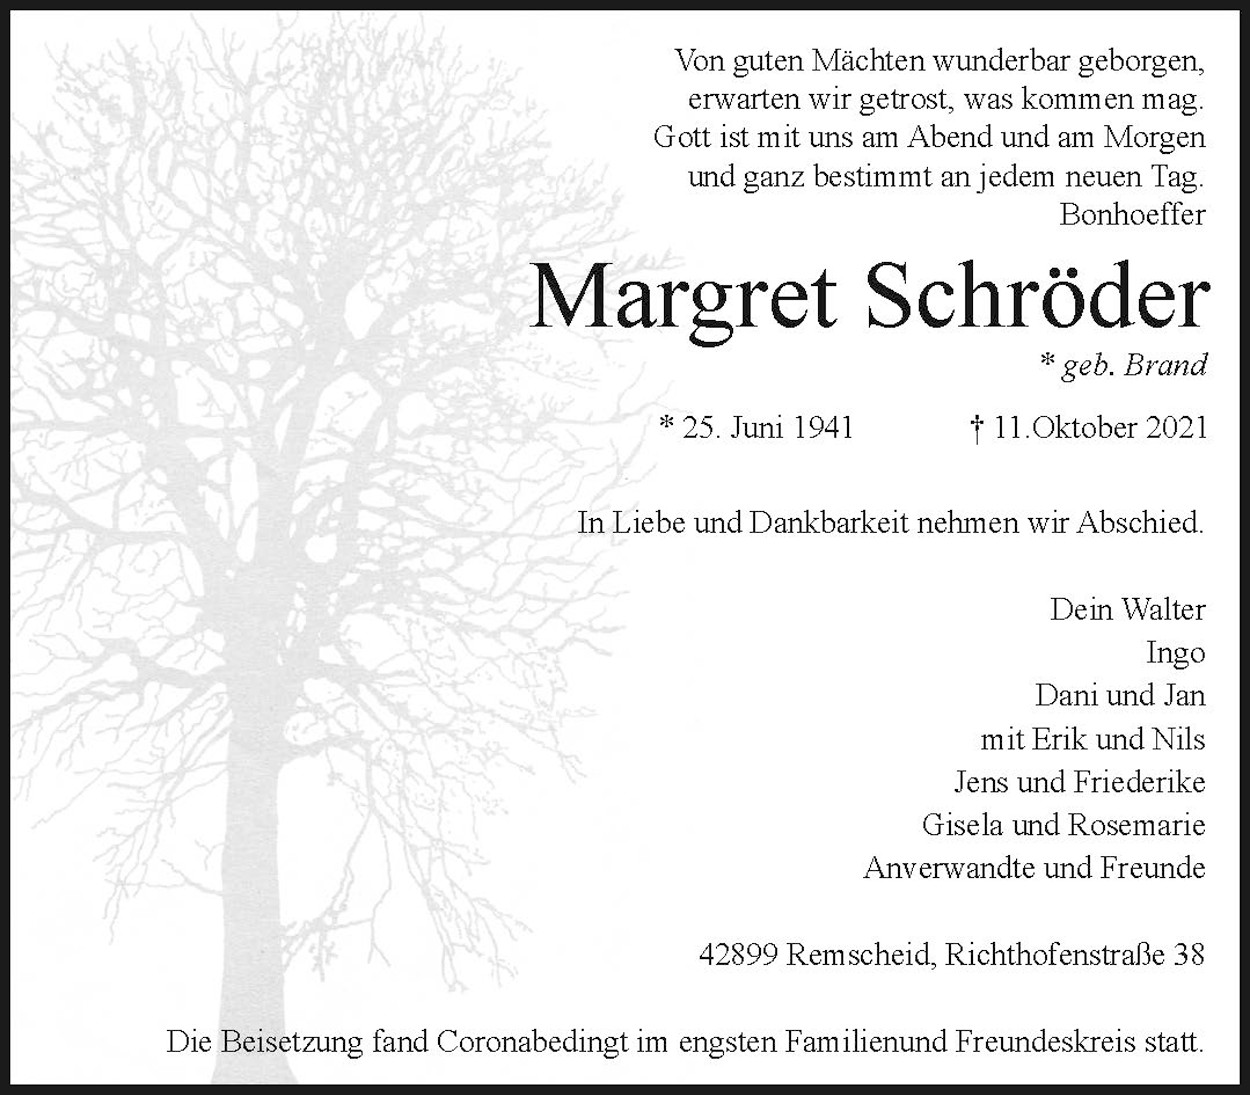 Margret Schröder